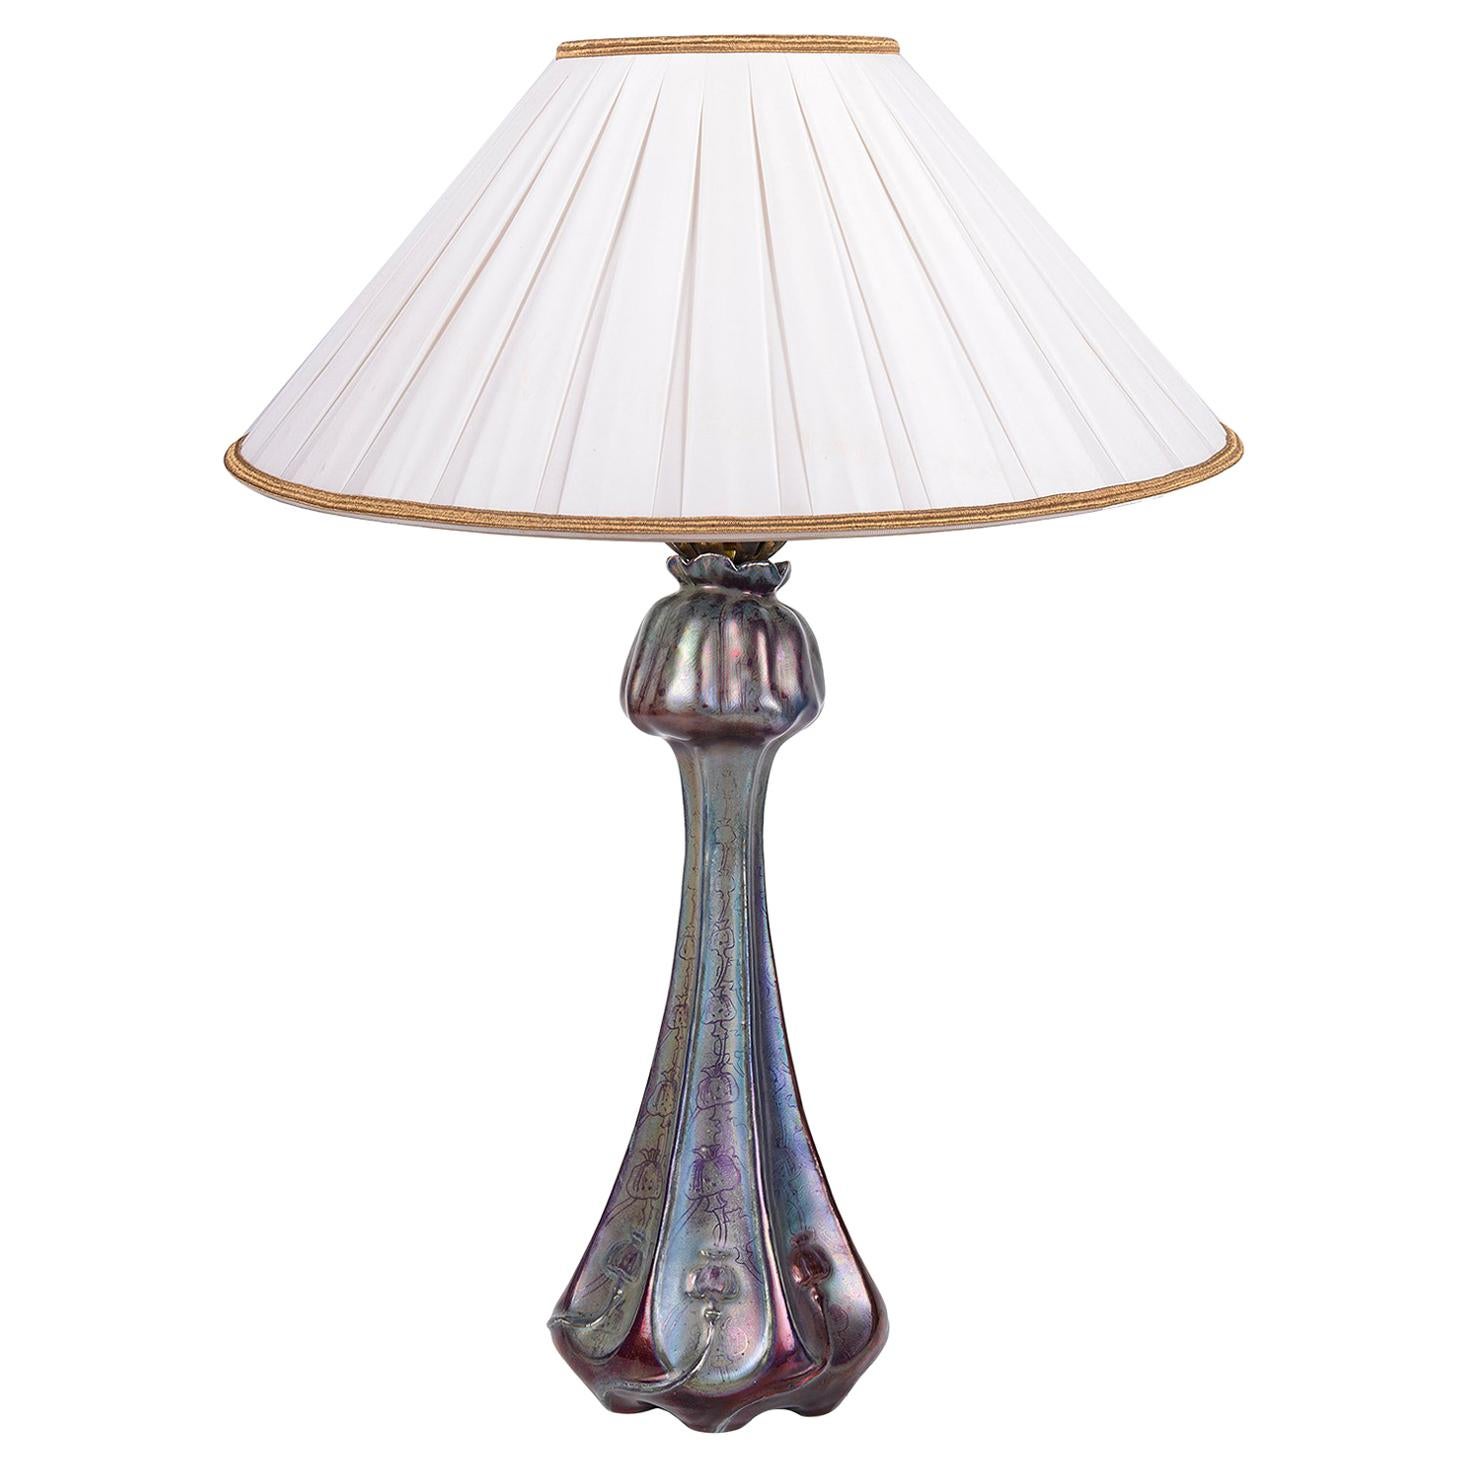 Delphin Massier Art Glass Lamp, circa 1860